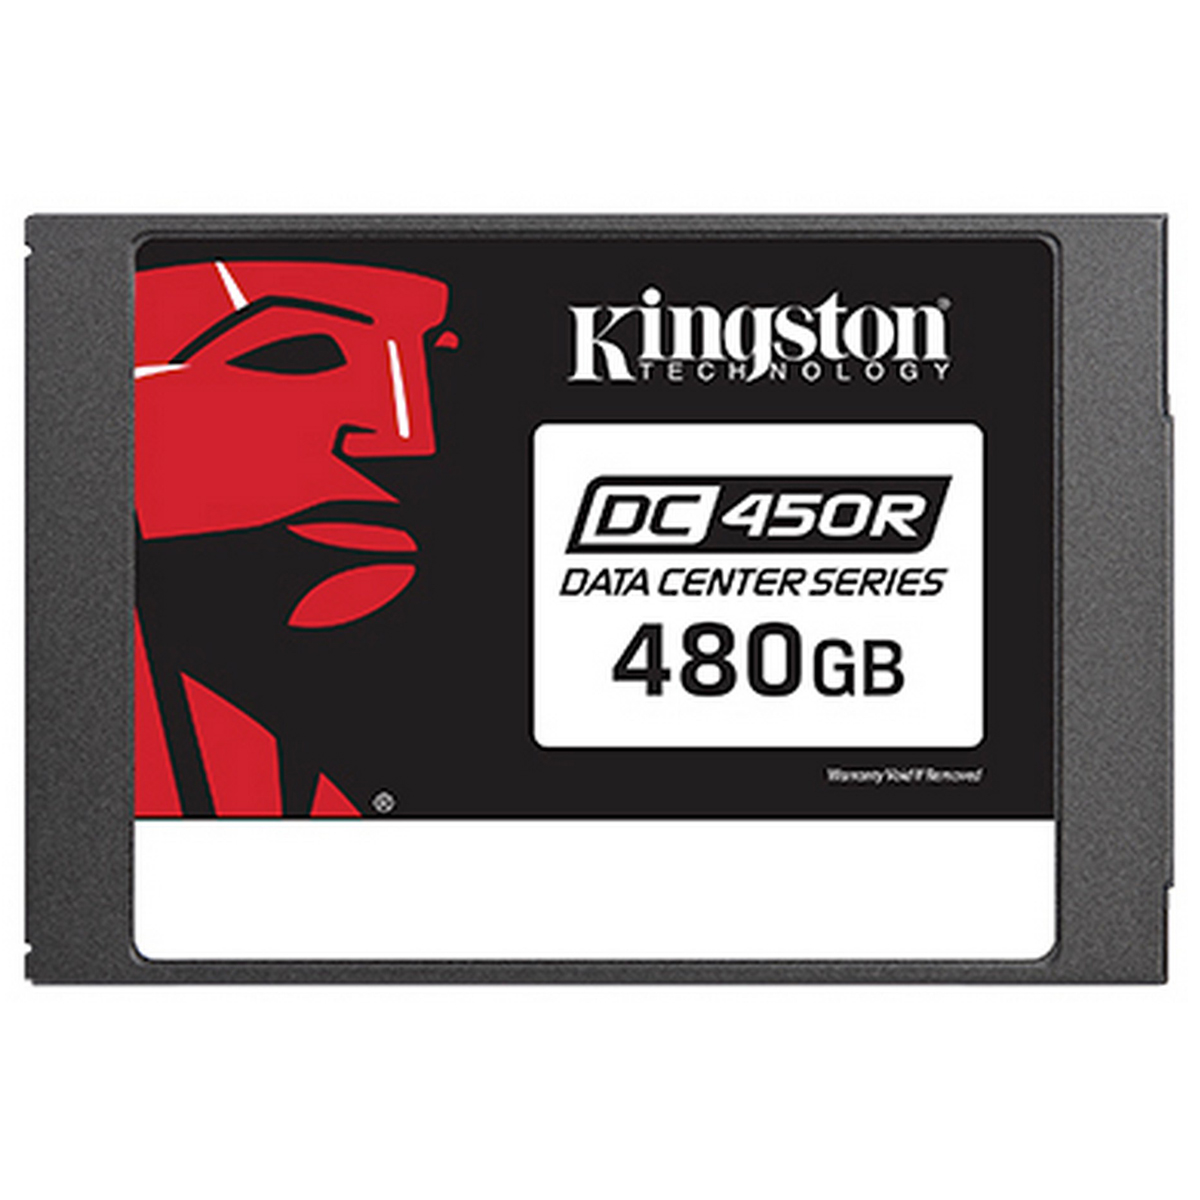 SSD 480G KI DC450R 2.5 SATA